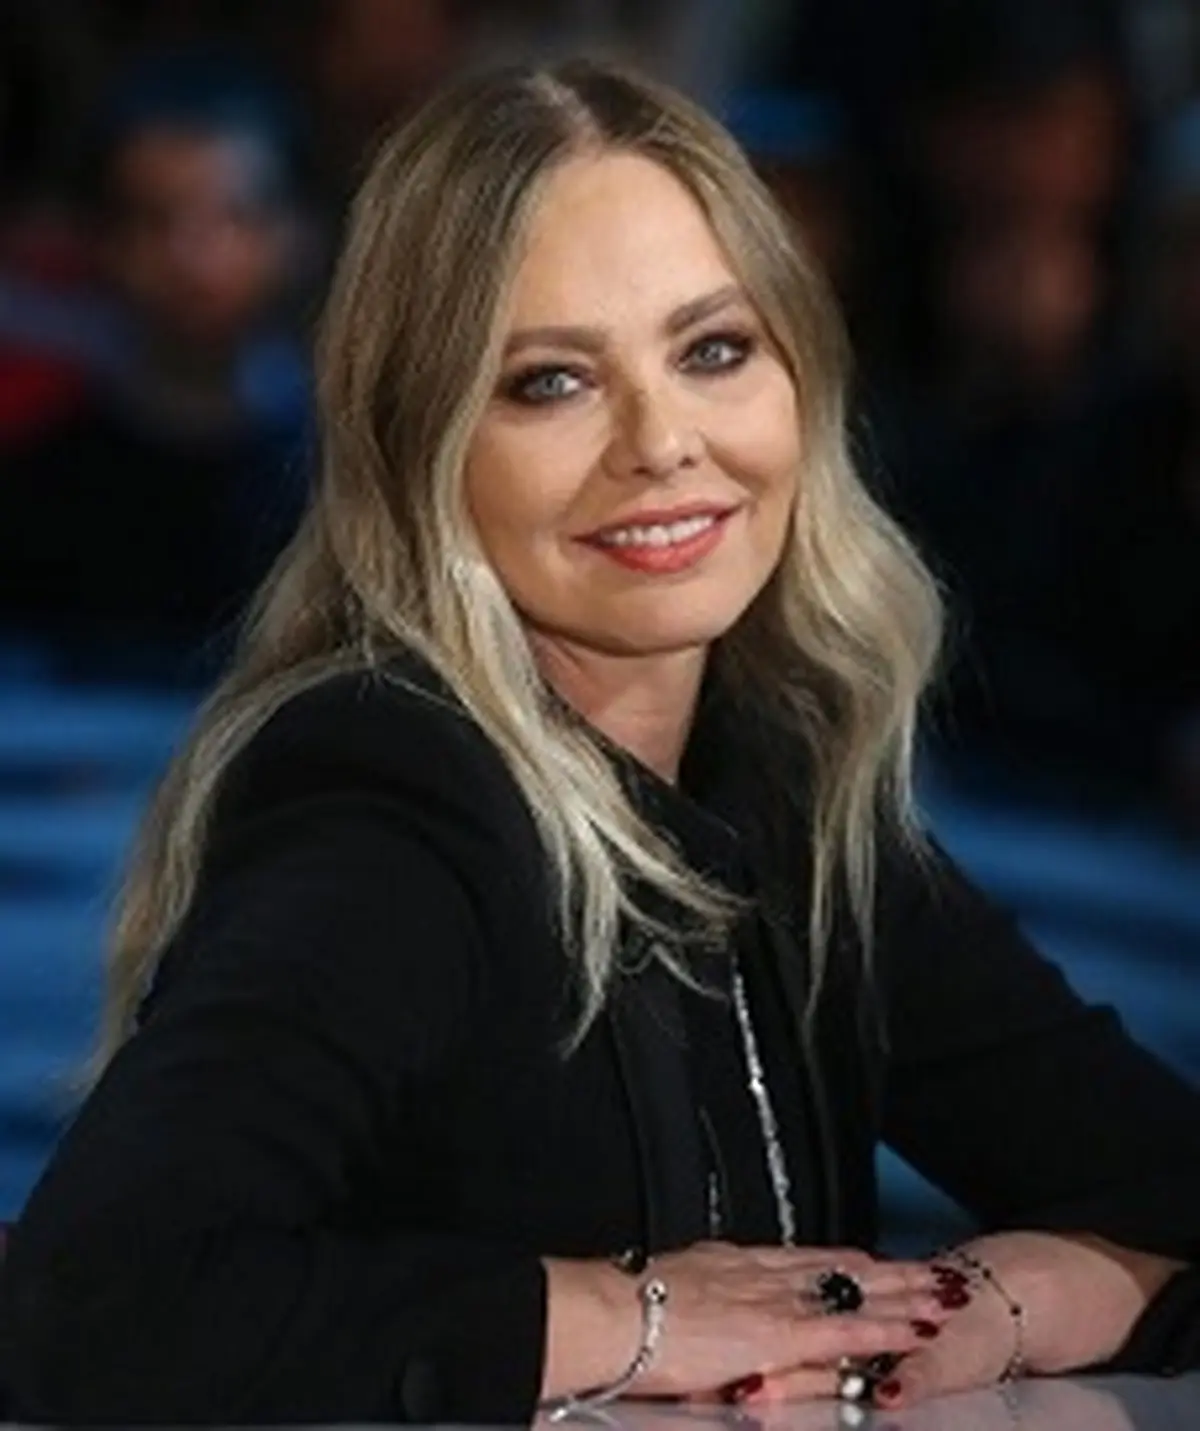 جریمه 30 هزار یورویی هنرپیشه ایتالیایی به خاطر تقلب برای حضور در مراسم شام با "پوتین" و "کوین کاسنر"